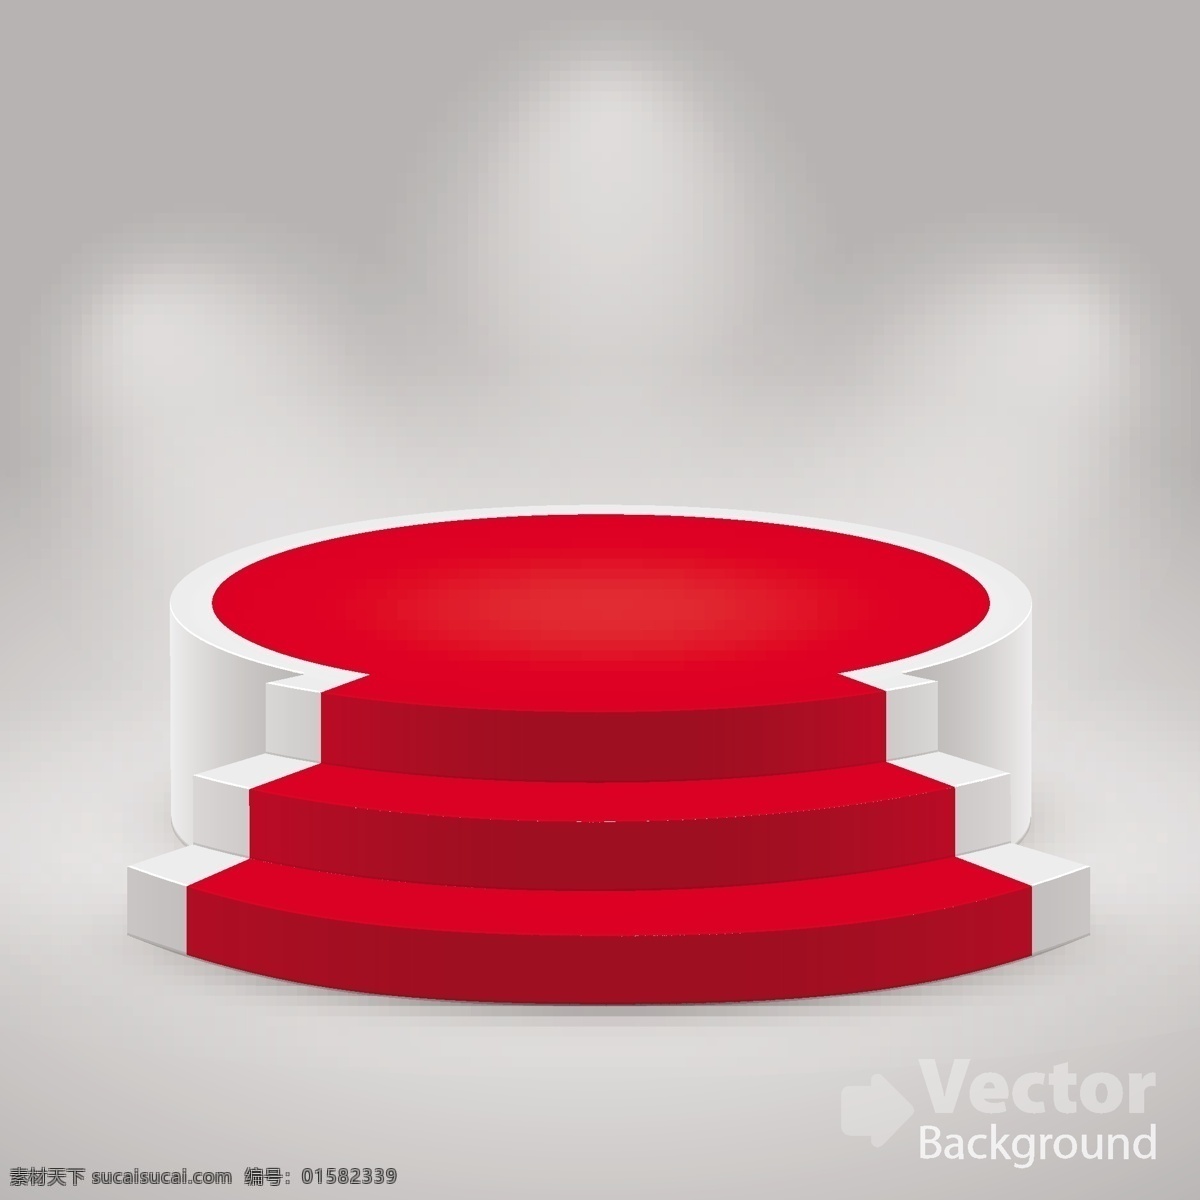 圆形 红色 白色 礼 台 礼台 展示台 3d展示 展架 聚光灯 生活百科 矢量素材